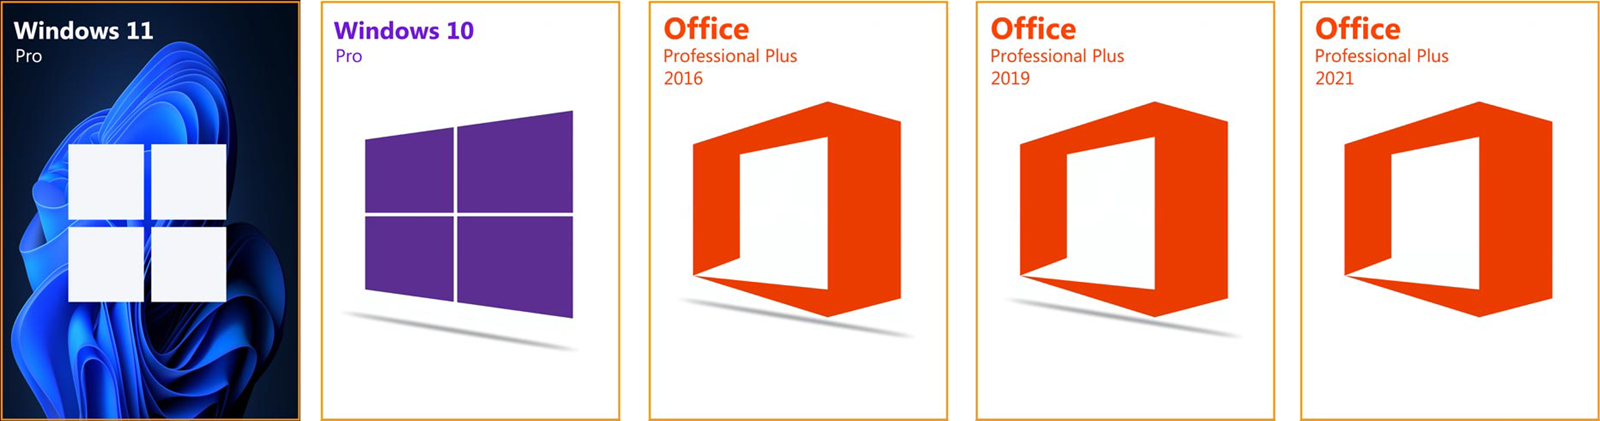 Najbolja ponuda - Windows 10 za 8,36 eura ili Office 2016 Pro za 18,78 eura  - Promo @ Bug.hr